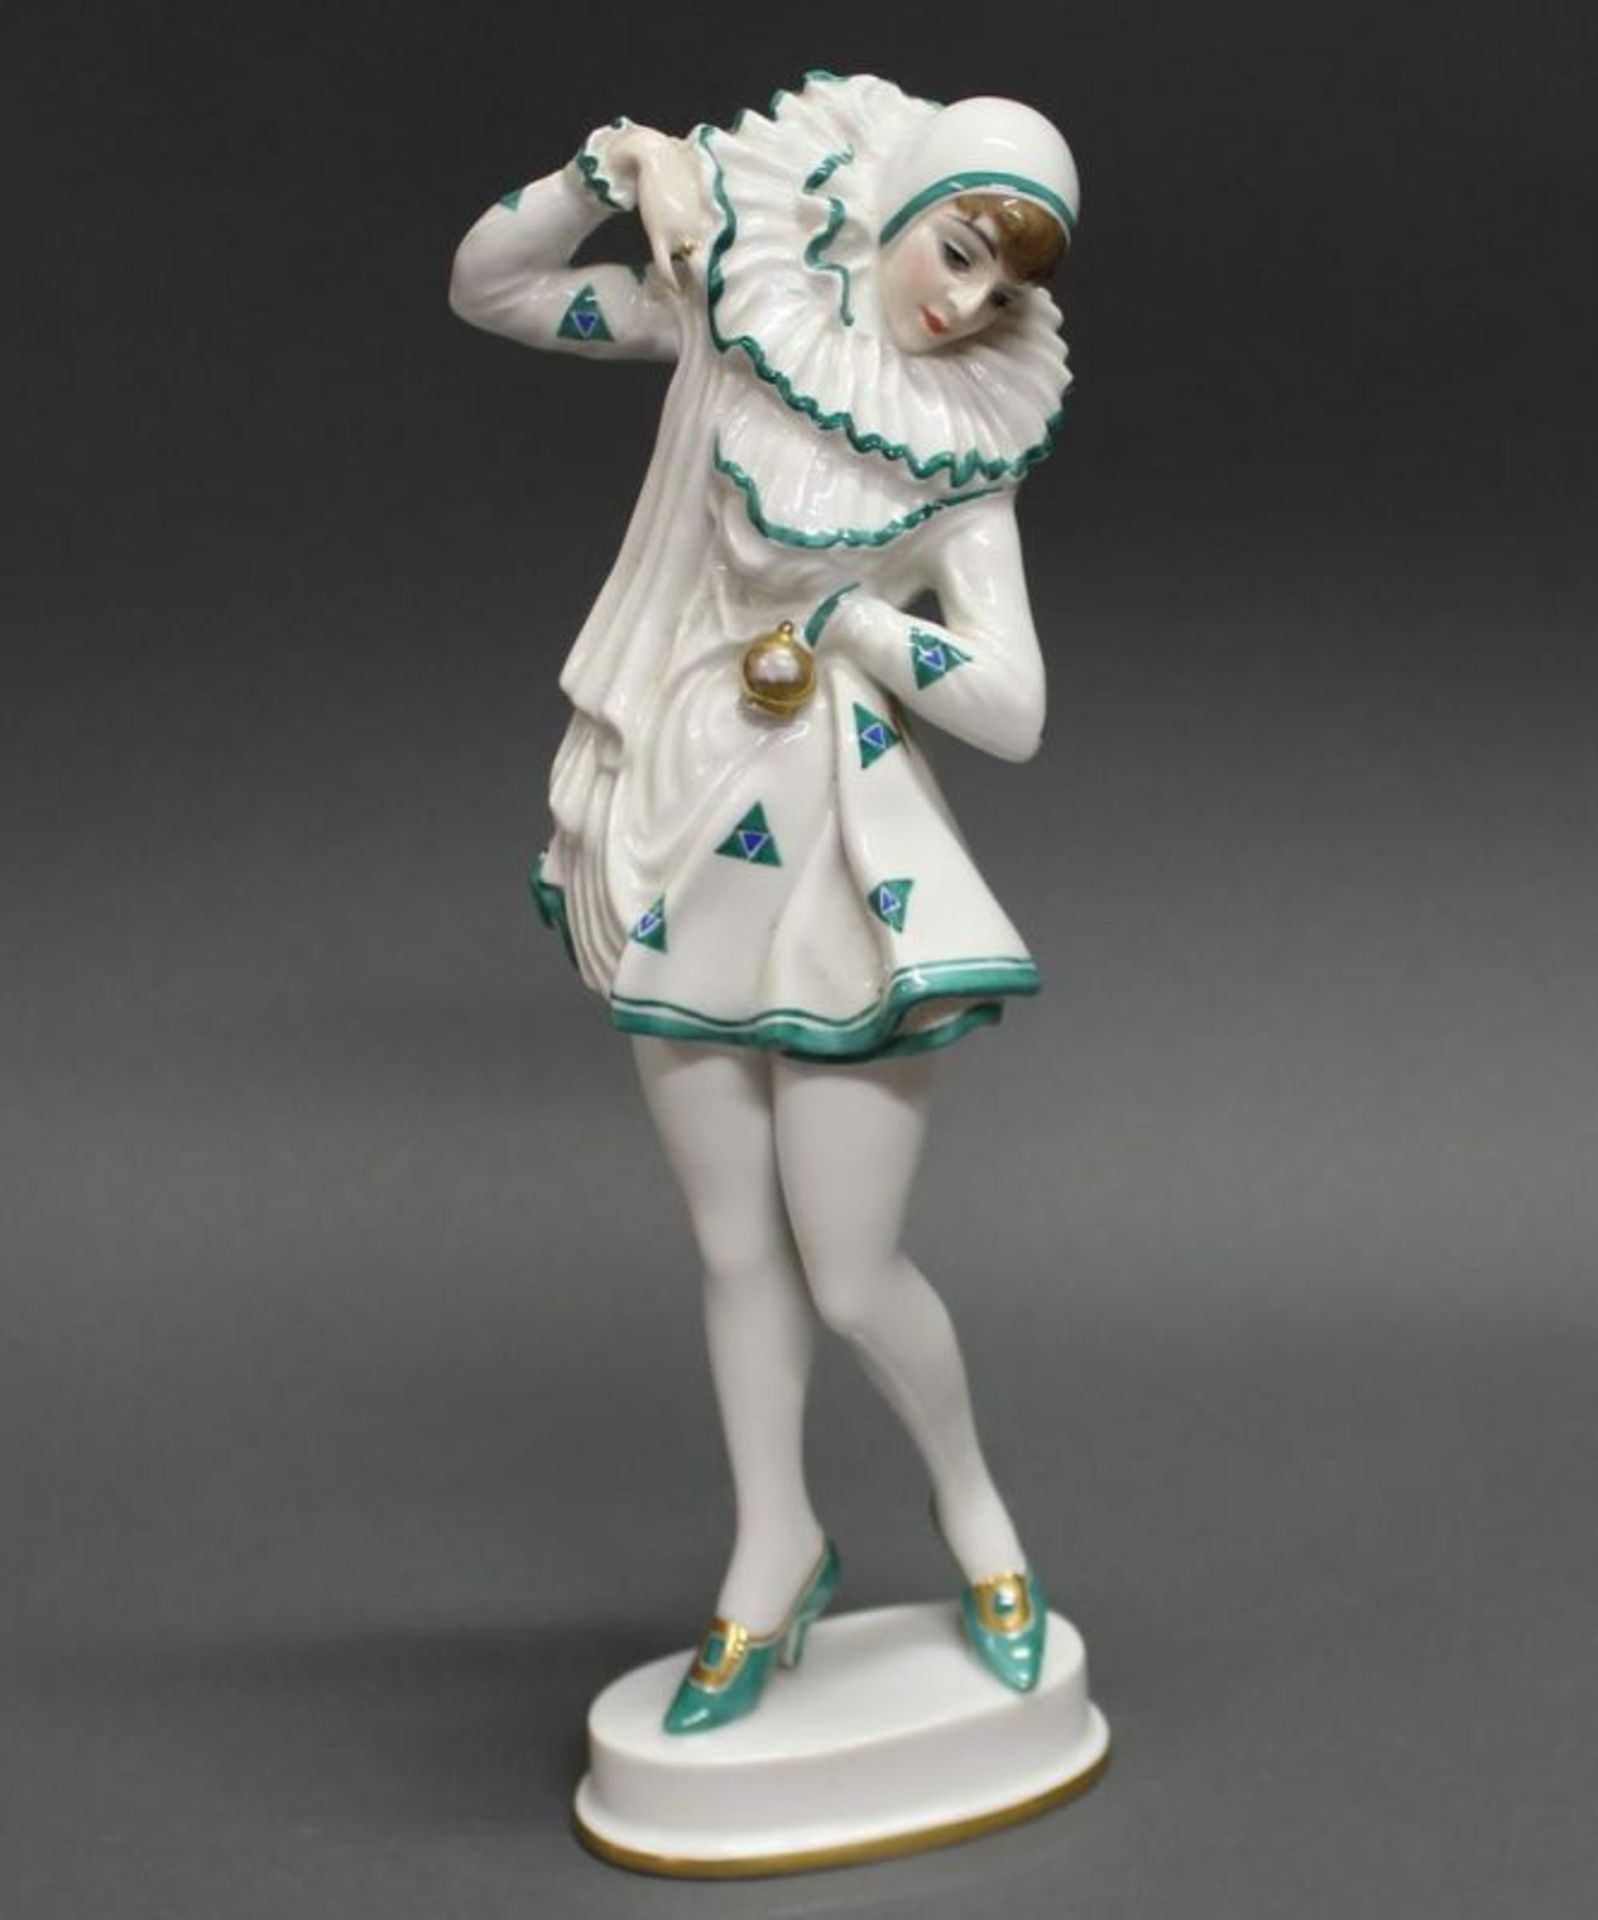 Porzellanfigur, "Pierrette (Anita Berber)", Rosenthal, Selb-Bavaria, Modellnummer K 579, polychrom